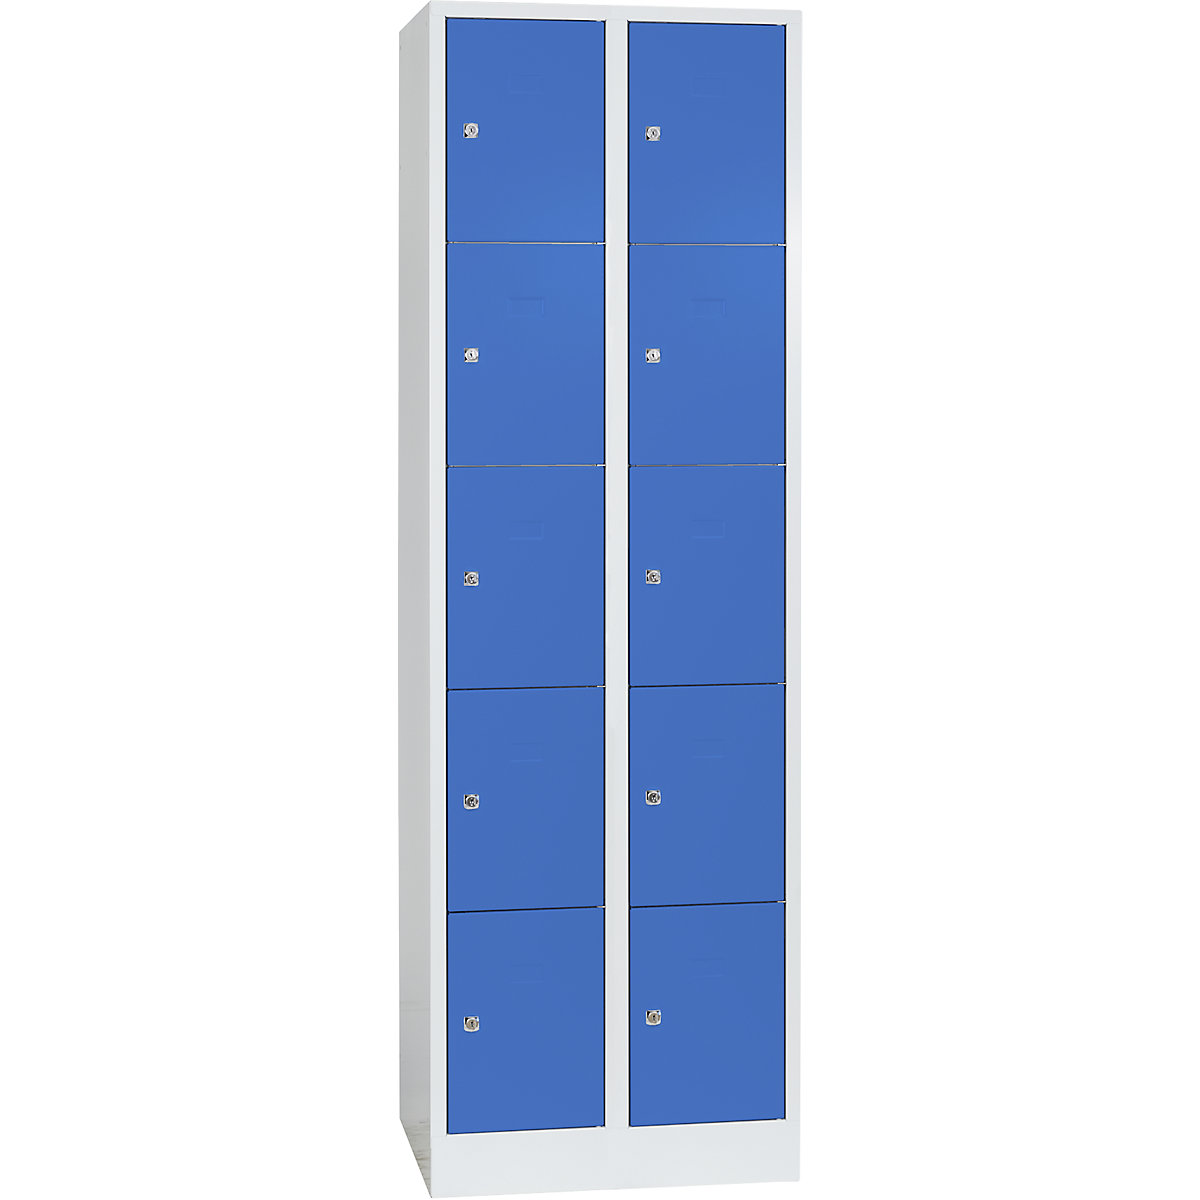 Wolf – Vestiaire modulaire à casiers verrouillables, 10 casiers, largeur 300 mm, bleu clair / gris clair